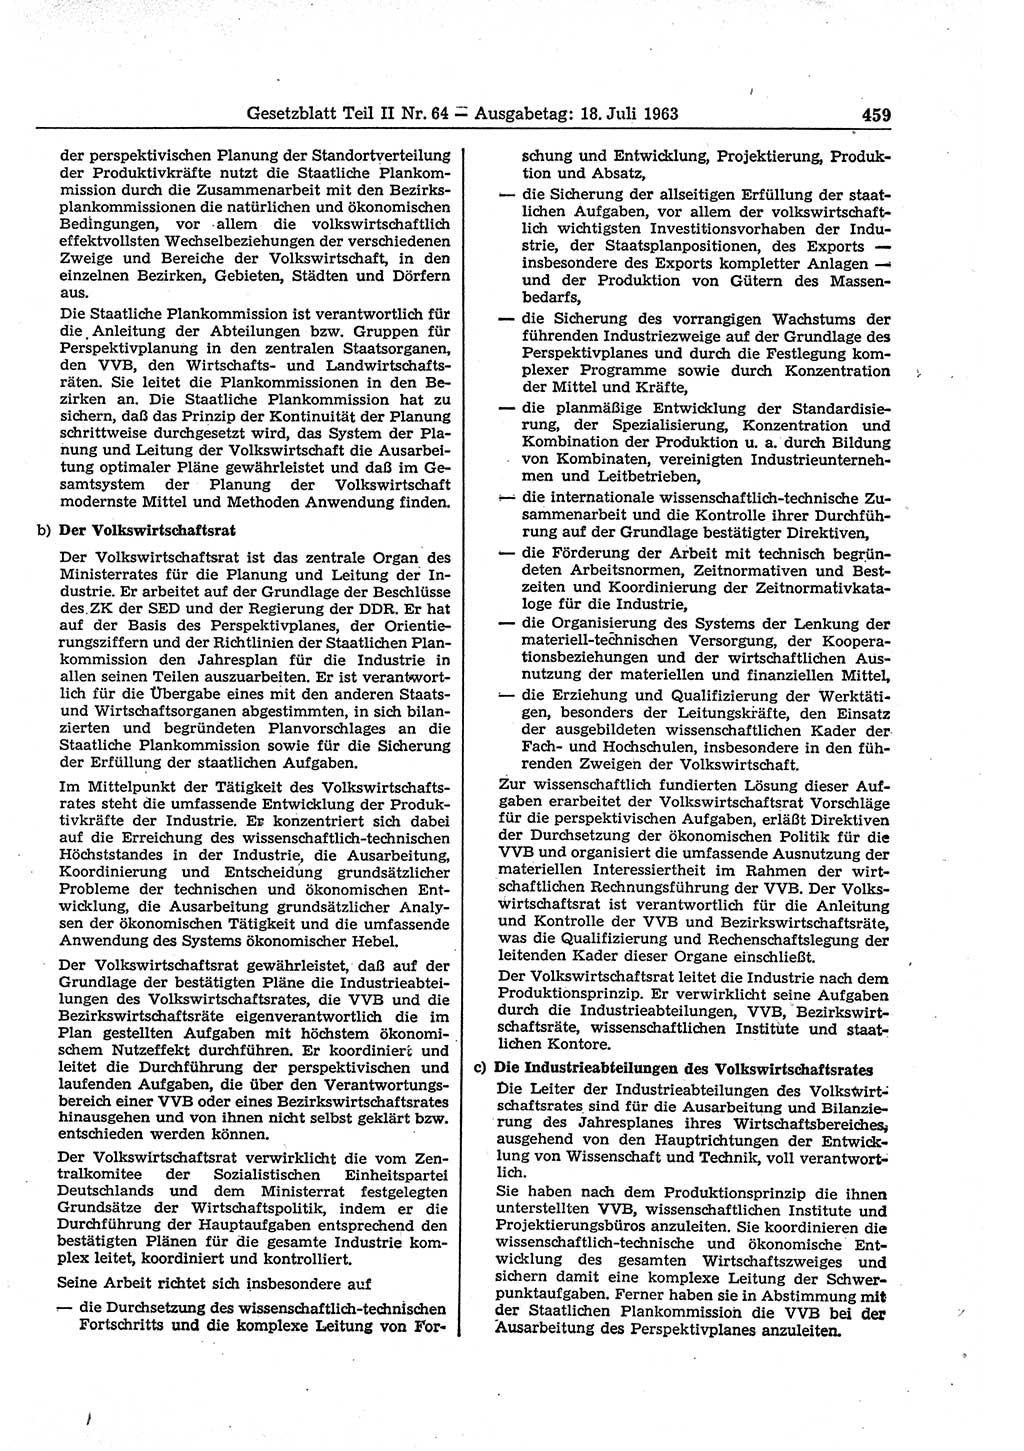 Gesetzblatt (GBl.) der Deutschen Demokratischen Republik (DDR) Teil ⅠⅠ 1963, Seite 459 (GBl. DDR ⅠⅠ 1963, S. 459)